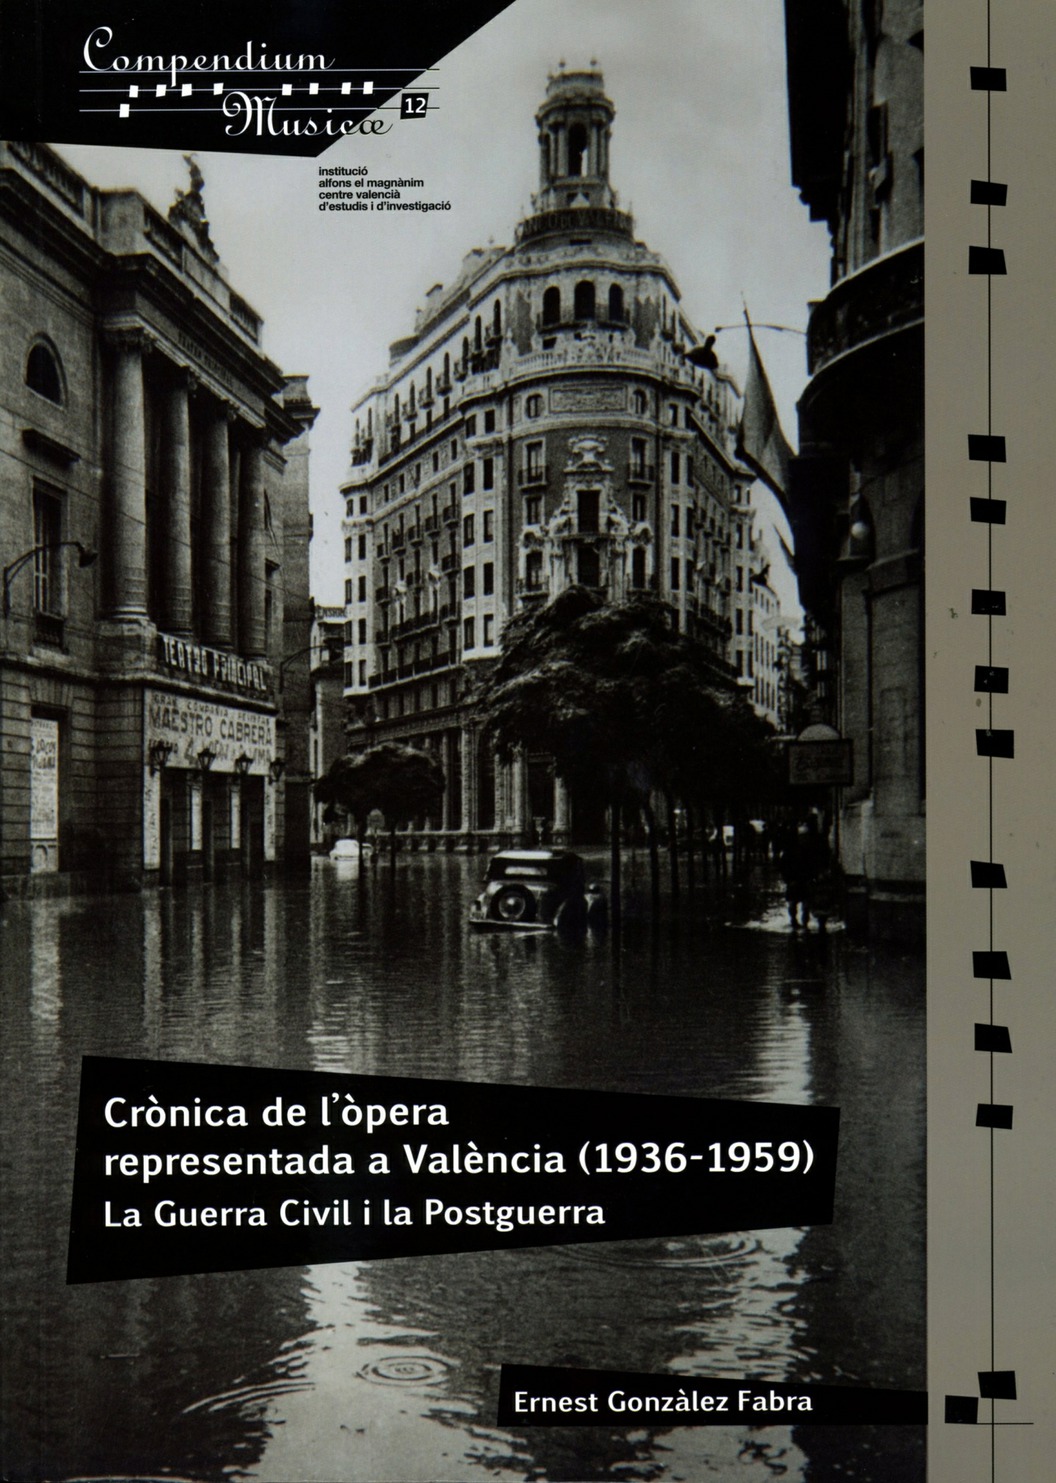 Crònica de la òpera representada a València (1936-1959). La Guerra Civil i la Postguerra